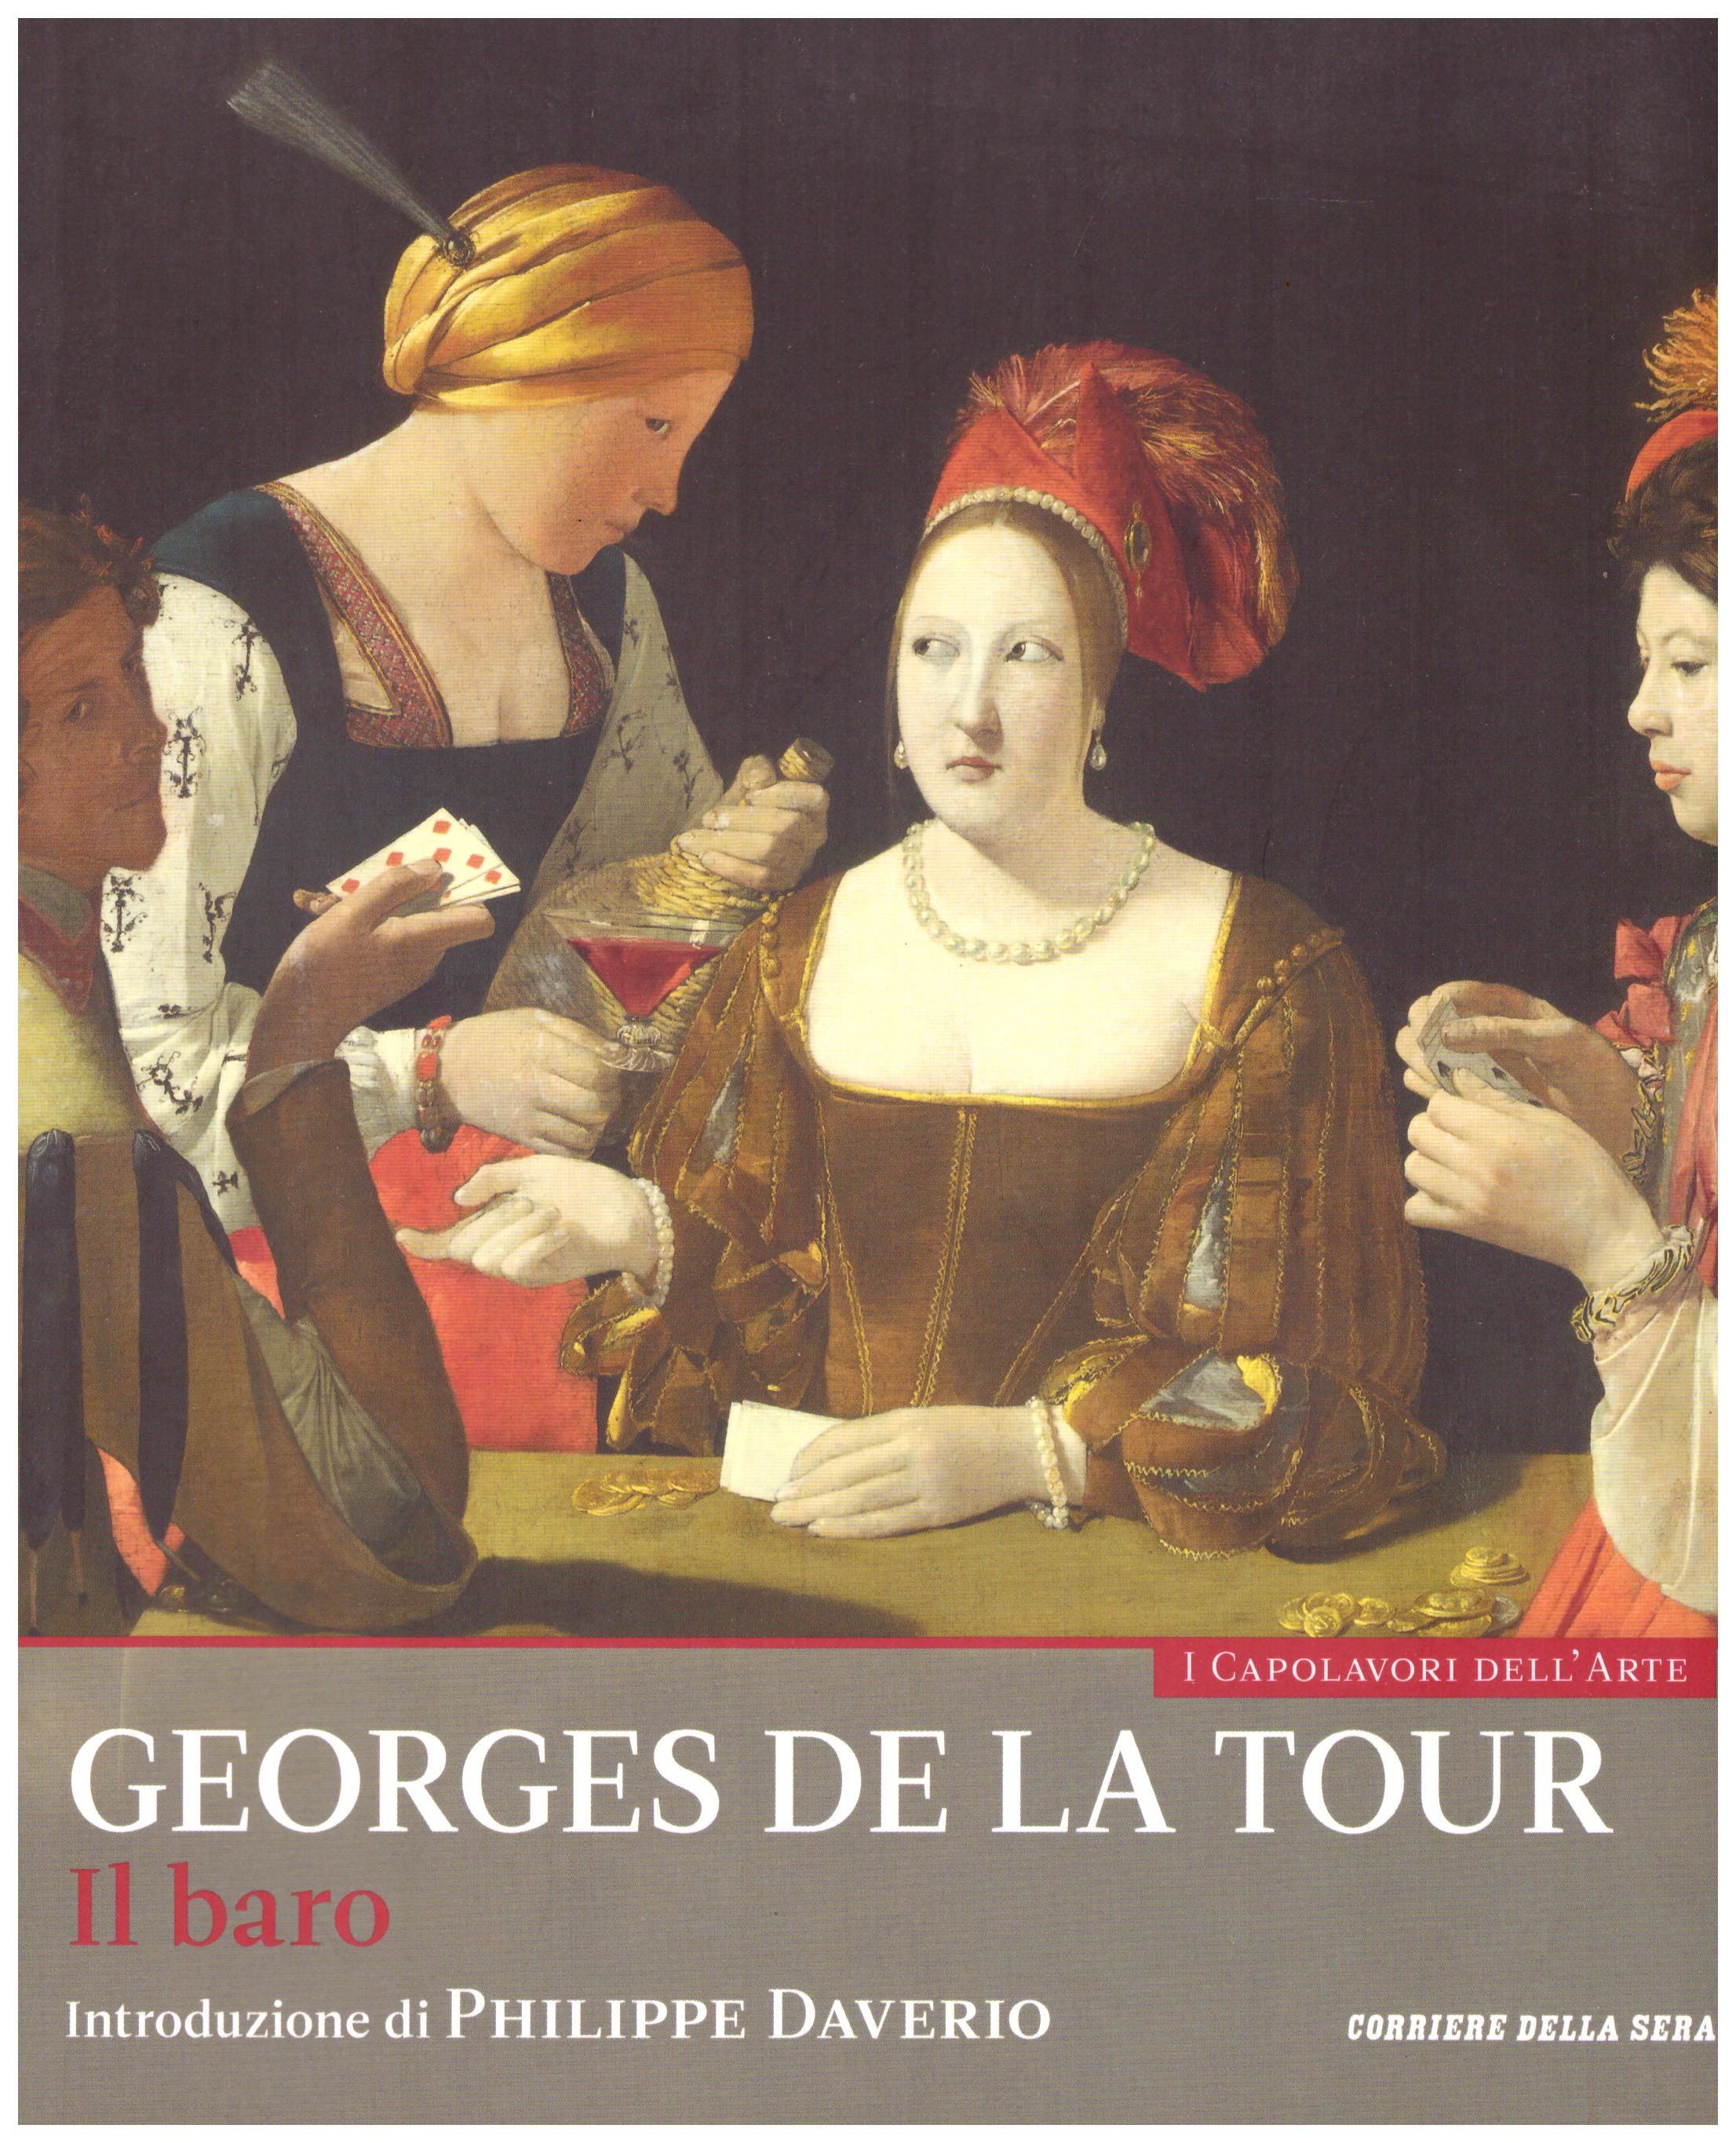 Titolo: I capolavori dell'arte, Georges de la Tour n.31  Autore : AA.VV.   Editore: education,it/corriere della sera, 2015